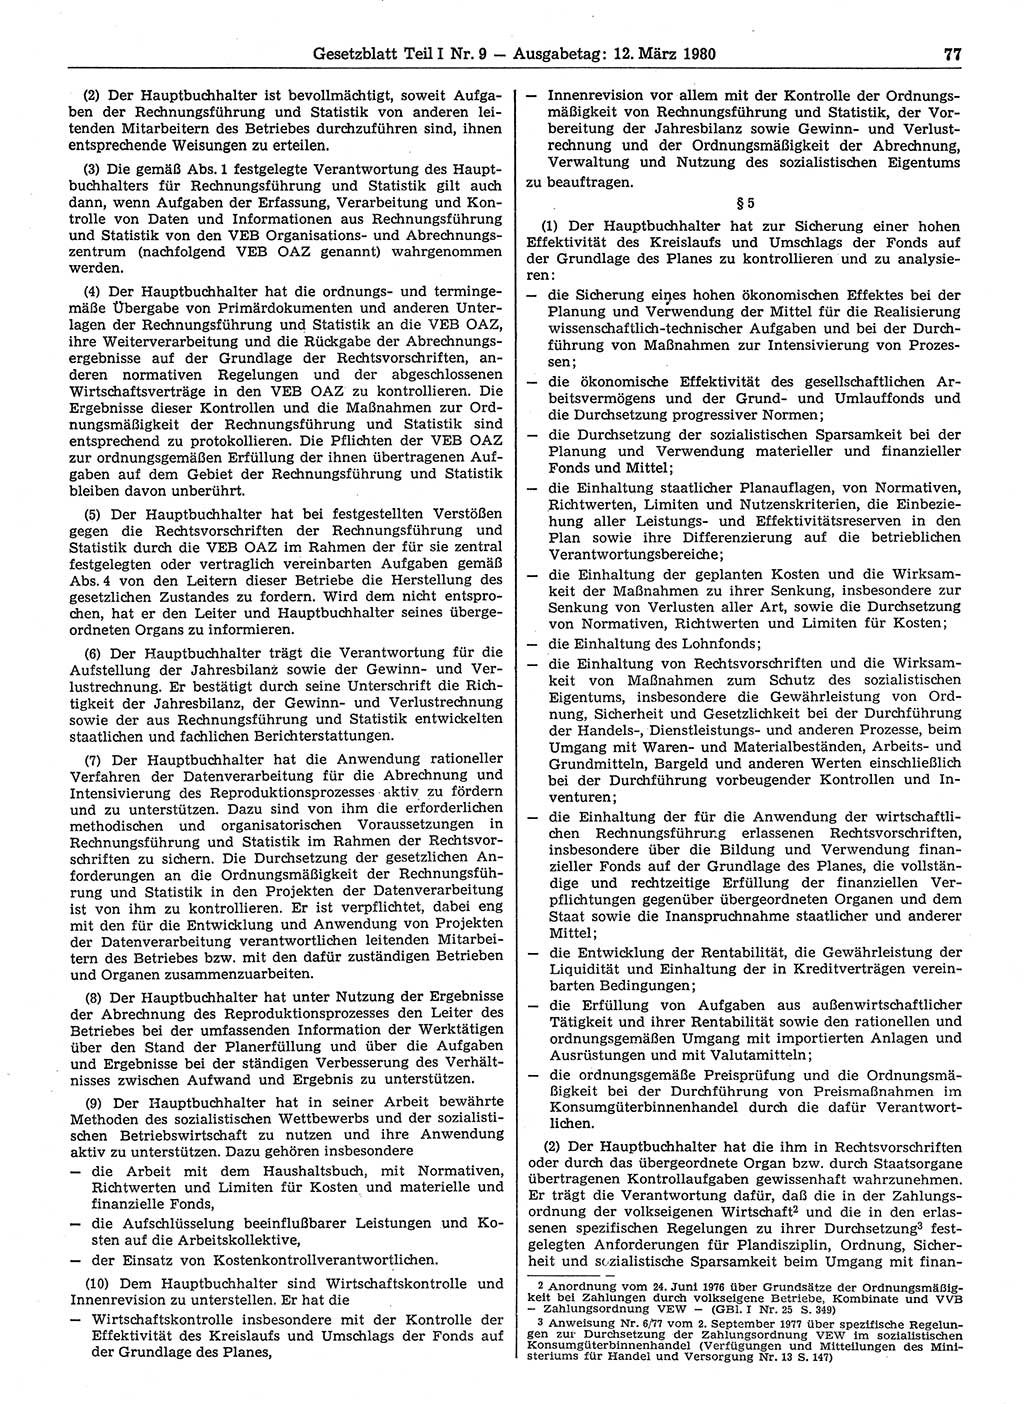 Gesetzblatt (GBl.) der Deutschen Demokratischen Republik (DDR) Teil Ⅰ 1980, Seite 77 (GBl. DDR Ⅰ 1980, S. 77)